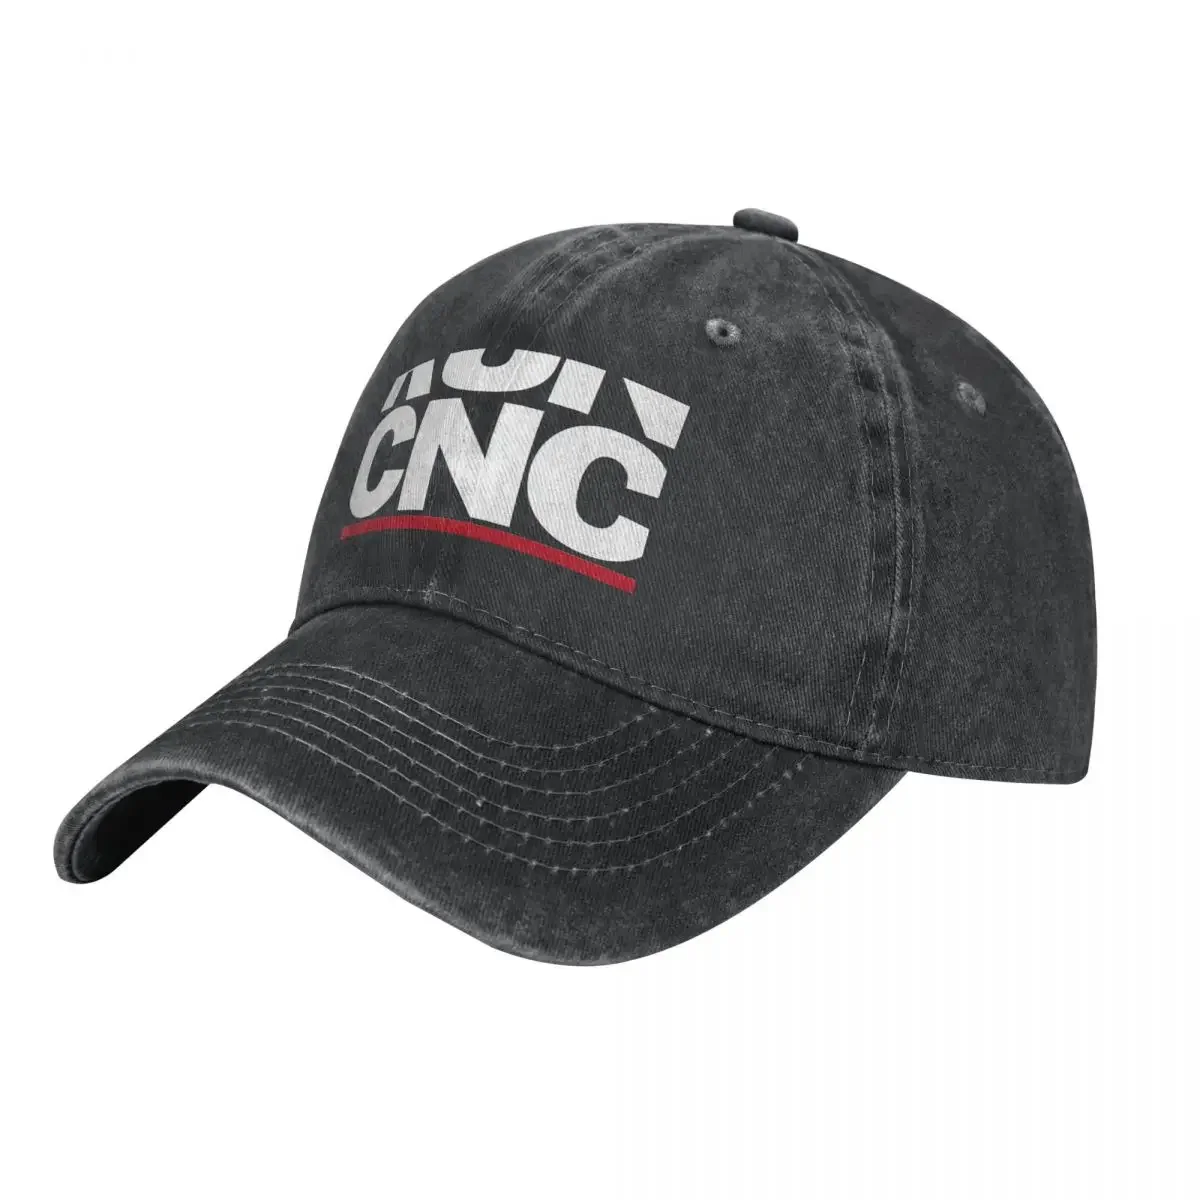 RUN CNC Cowboy Hat Trucker Hat Hat Man Luxury Mens Tennis Women's fashion soft flag of kuwait heart hat gift dad hat trucker hat cowboy hat